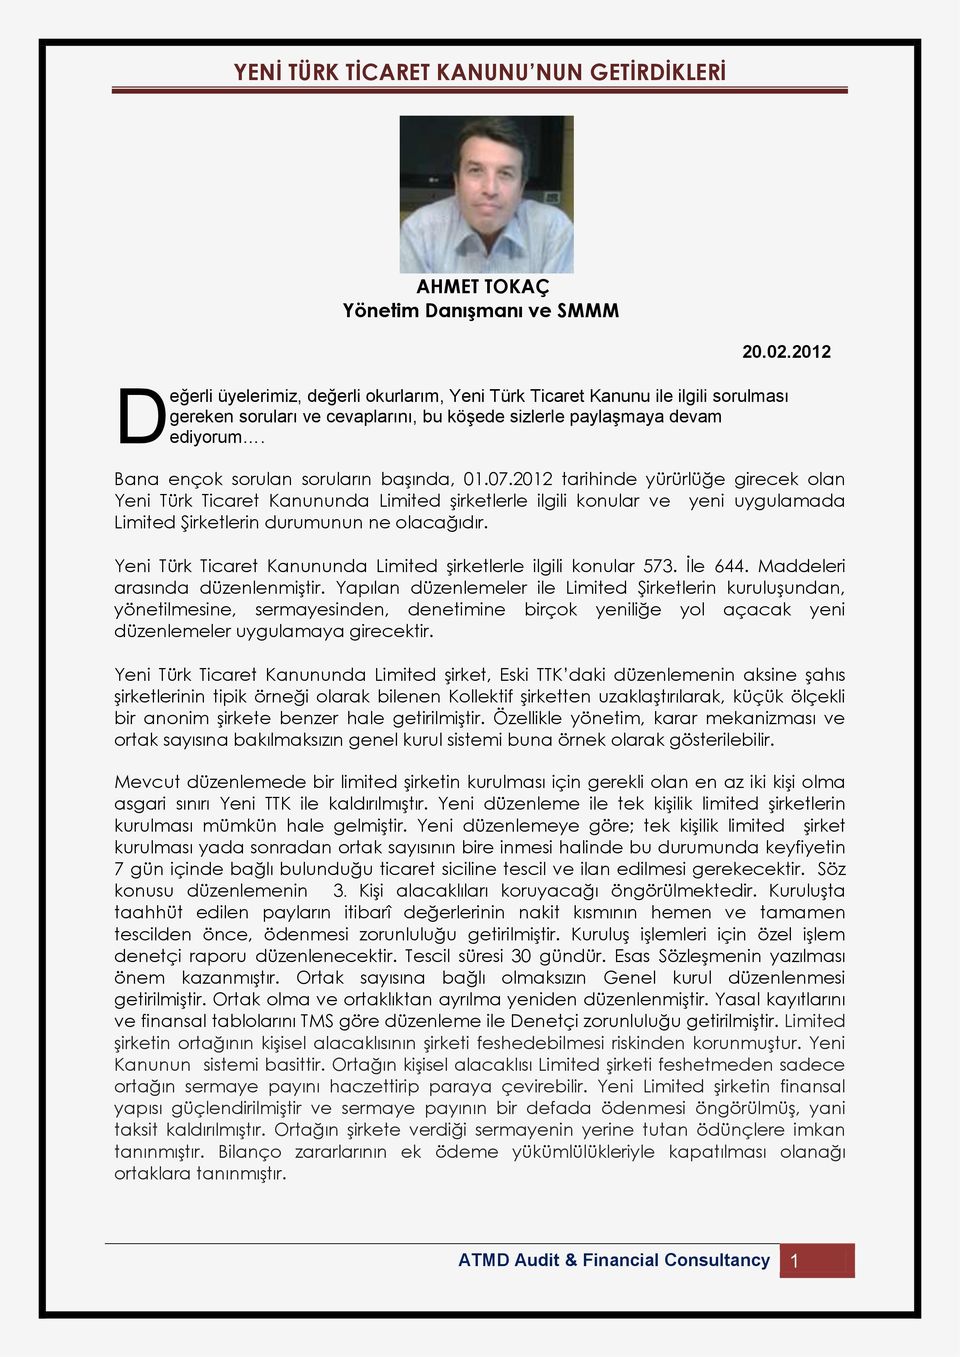 Bana ençk srulan sruların başında, 01.07.2012 tarihinde yürürlüğe girecek lan Yeni Türk Ticaret Kanununda imited şirketlerle ilgili knular ve yeni uygulamada imited Şirketlerin durumunun ne lacağıdır.